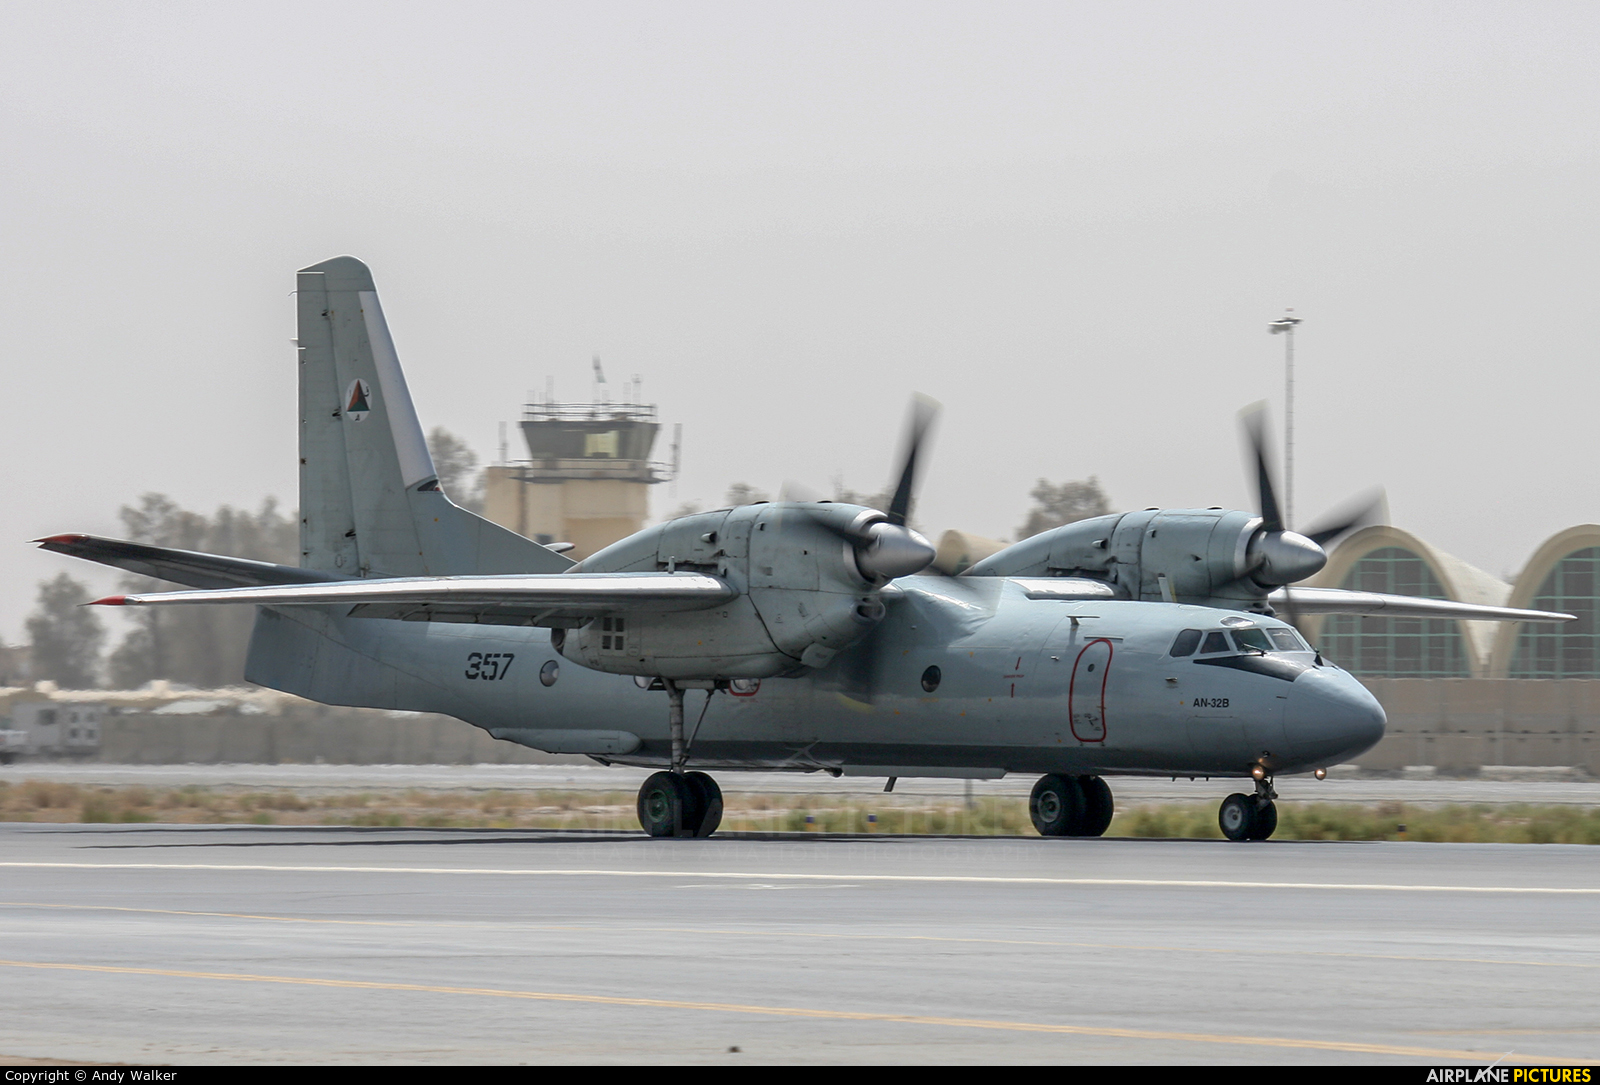 Afghanistan - Air Force 357 aircraft at Kandahar